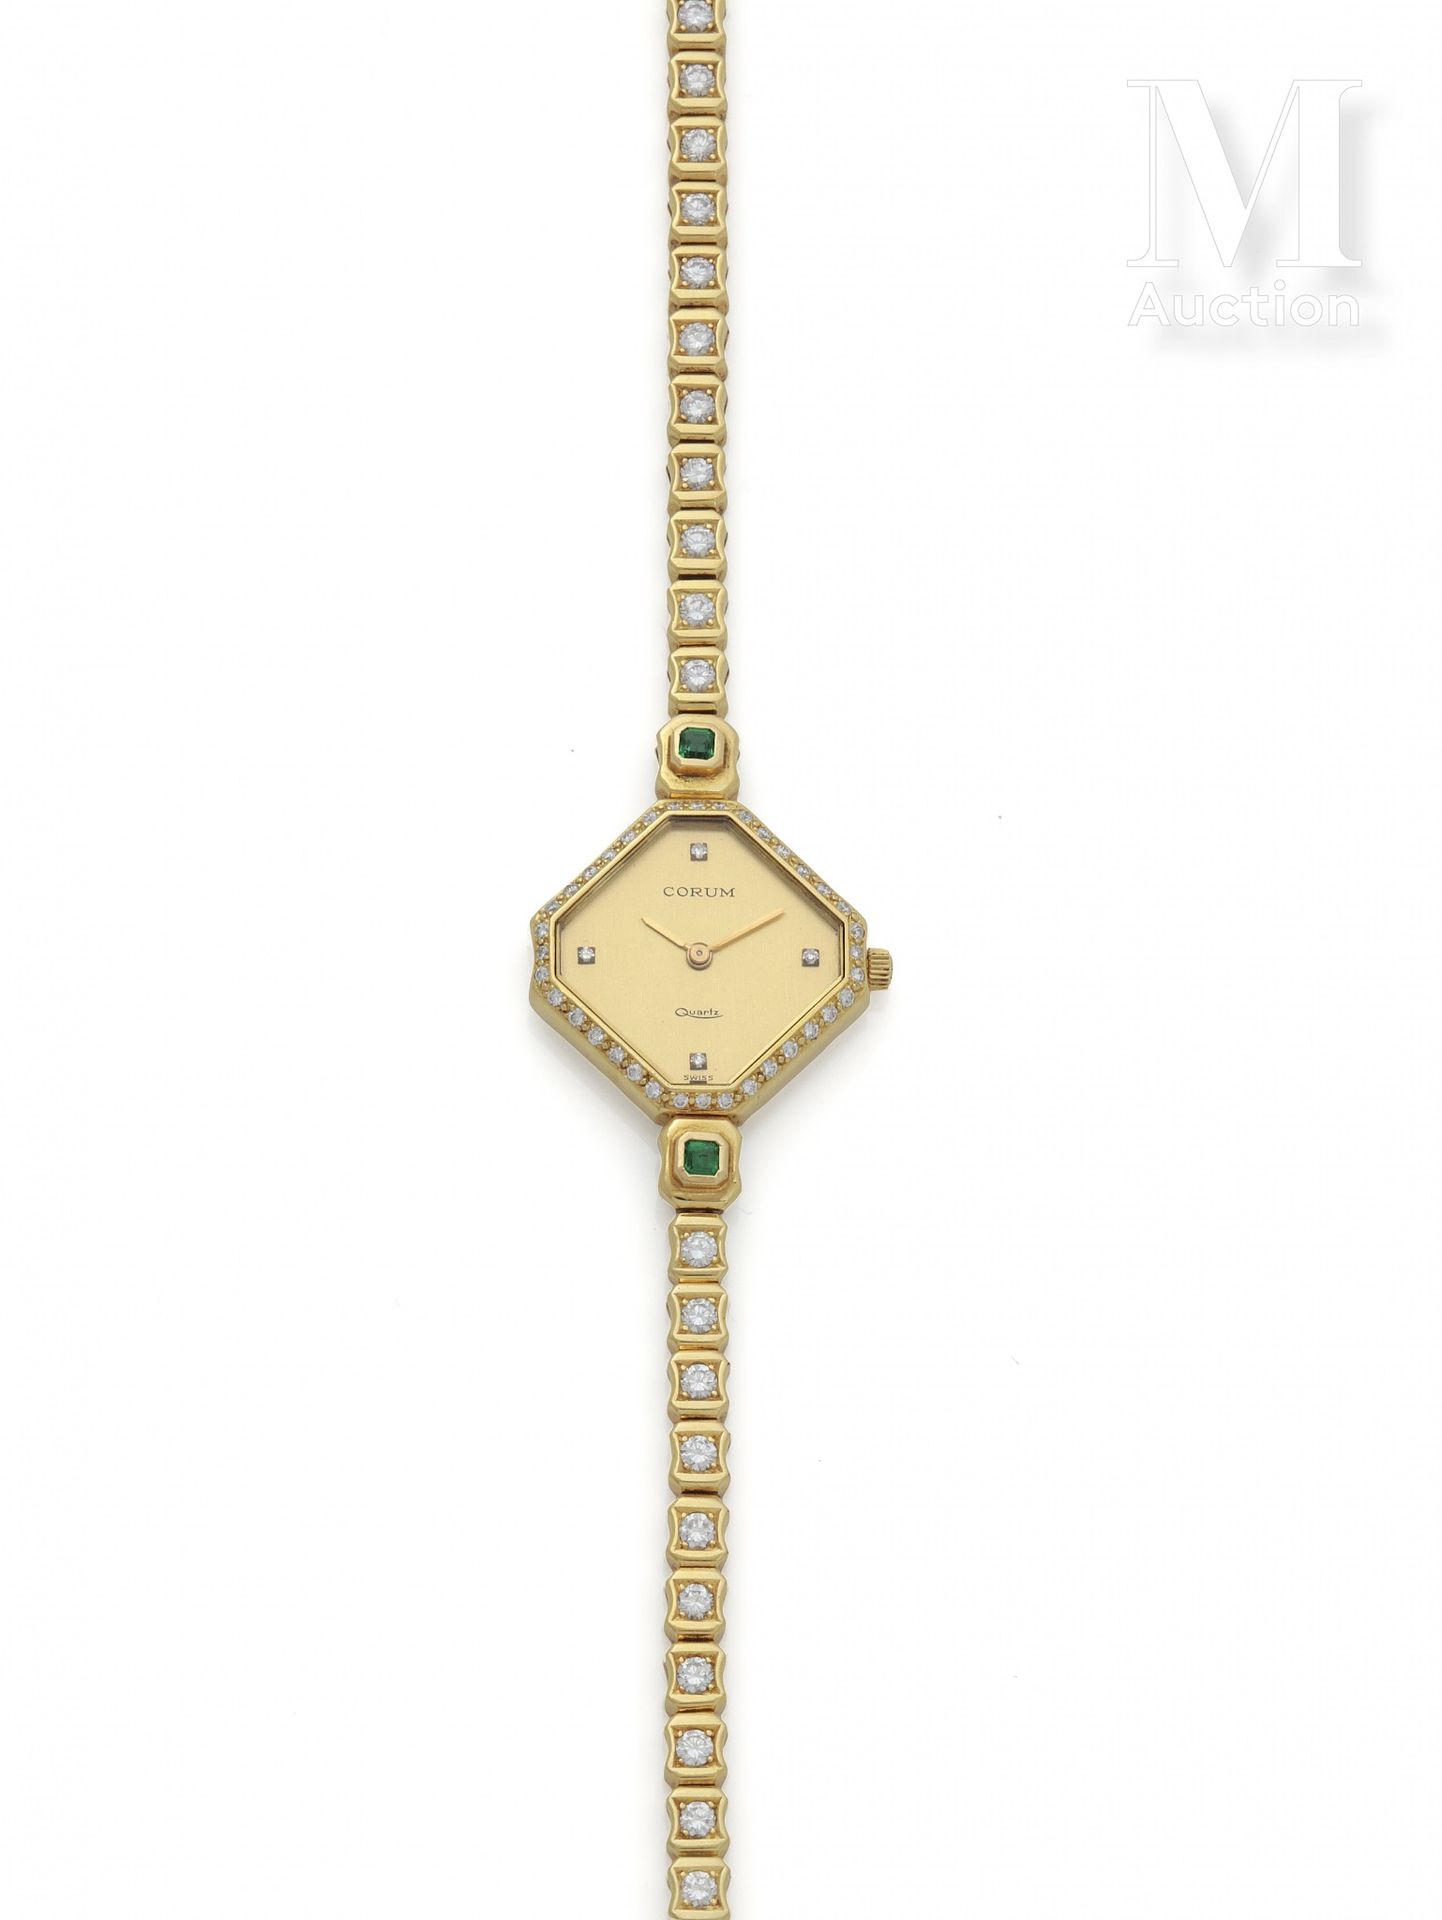 CORUM pour MELLERIO Reloj de mujer

Alrededor de 1970

Caja de oro de 18 quilate&hellip;